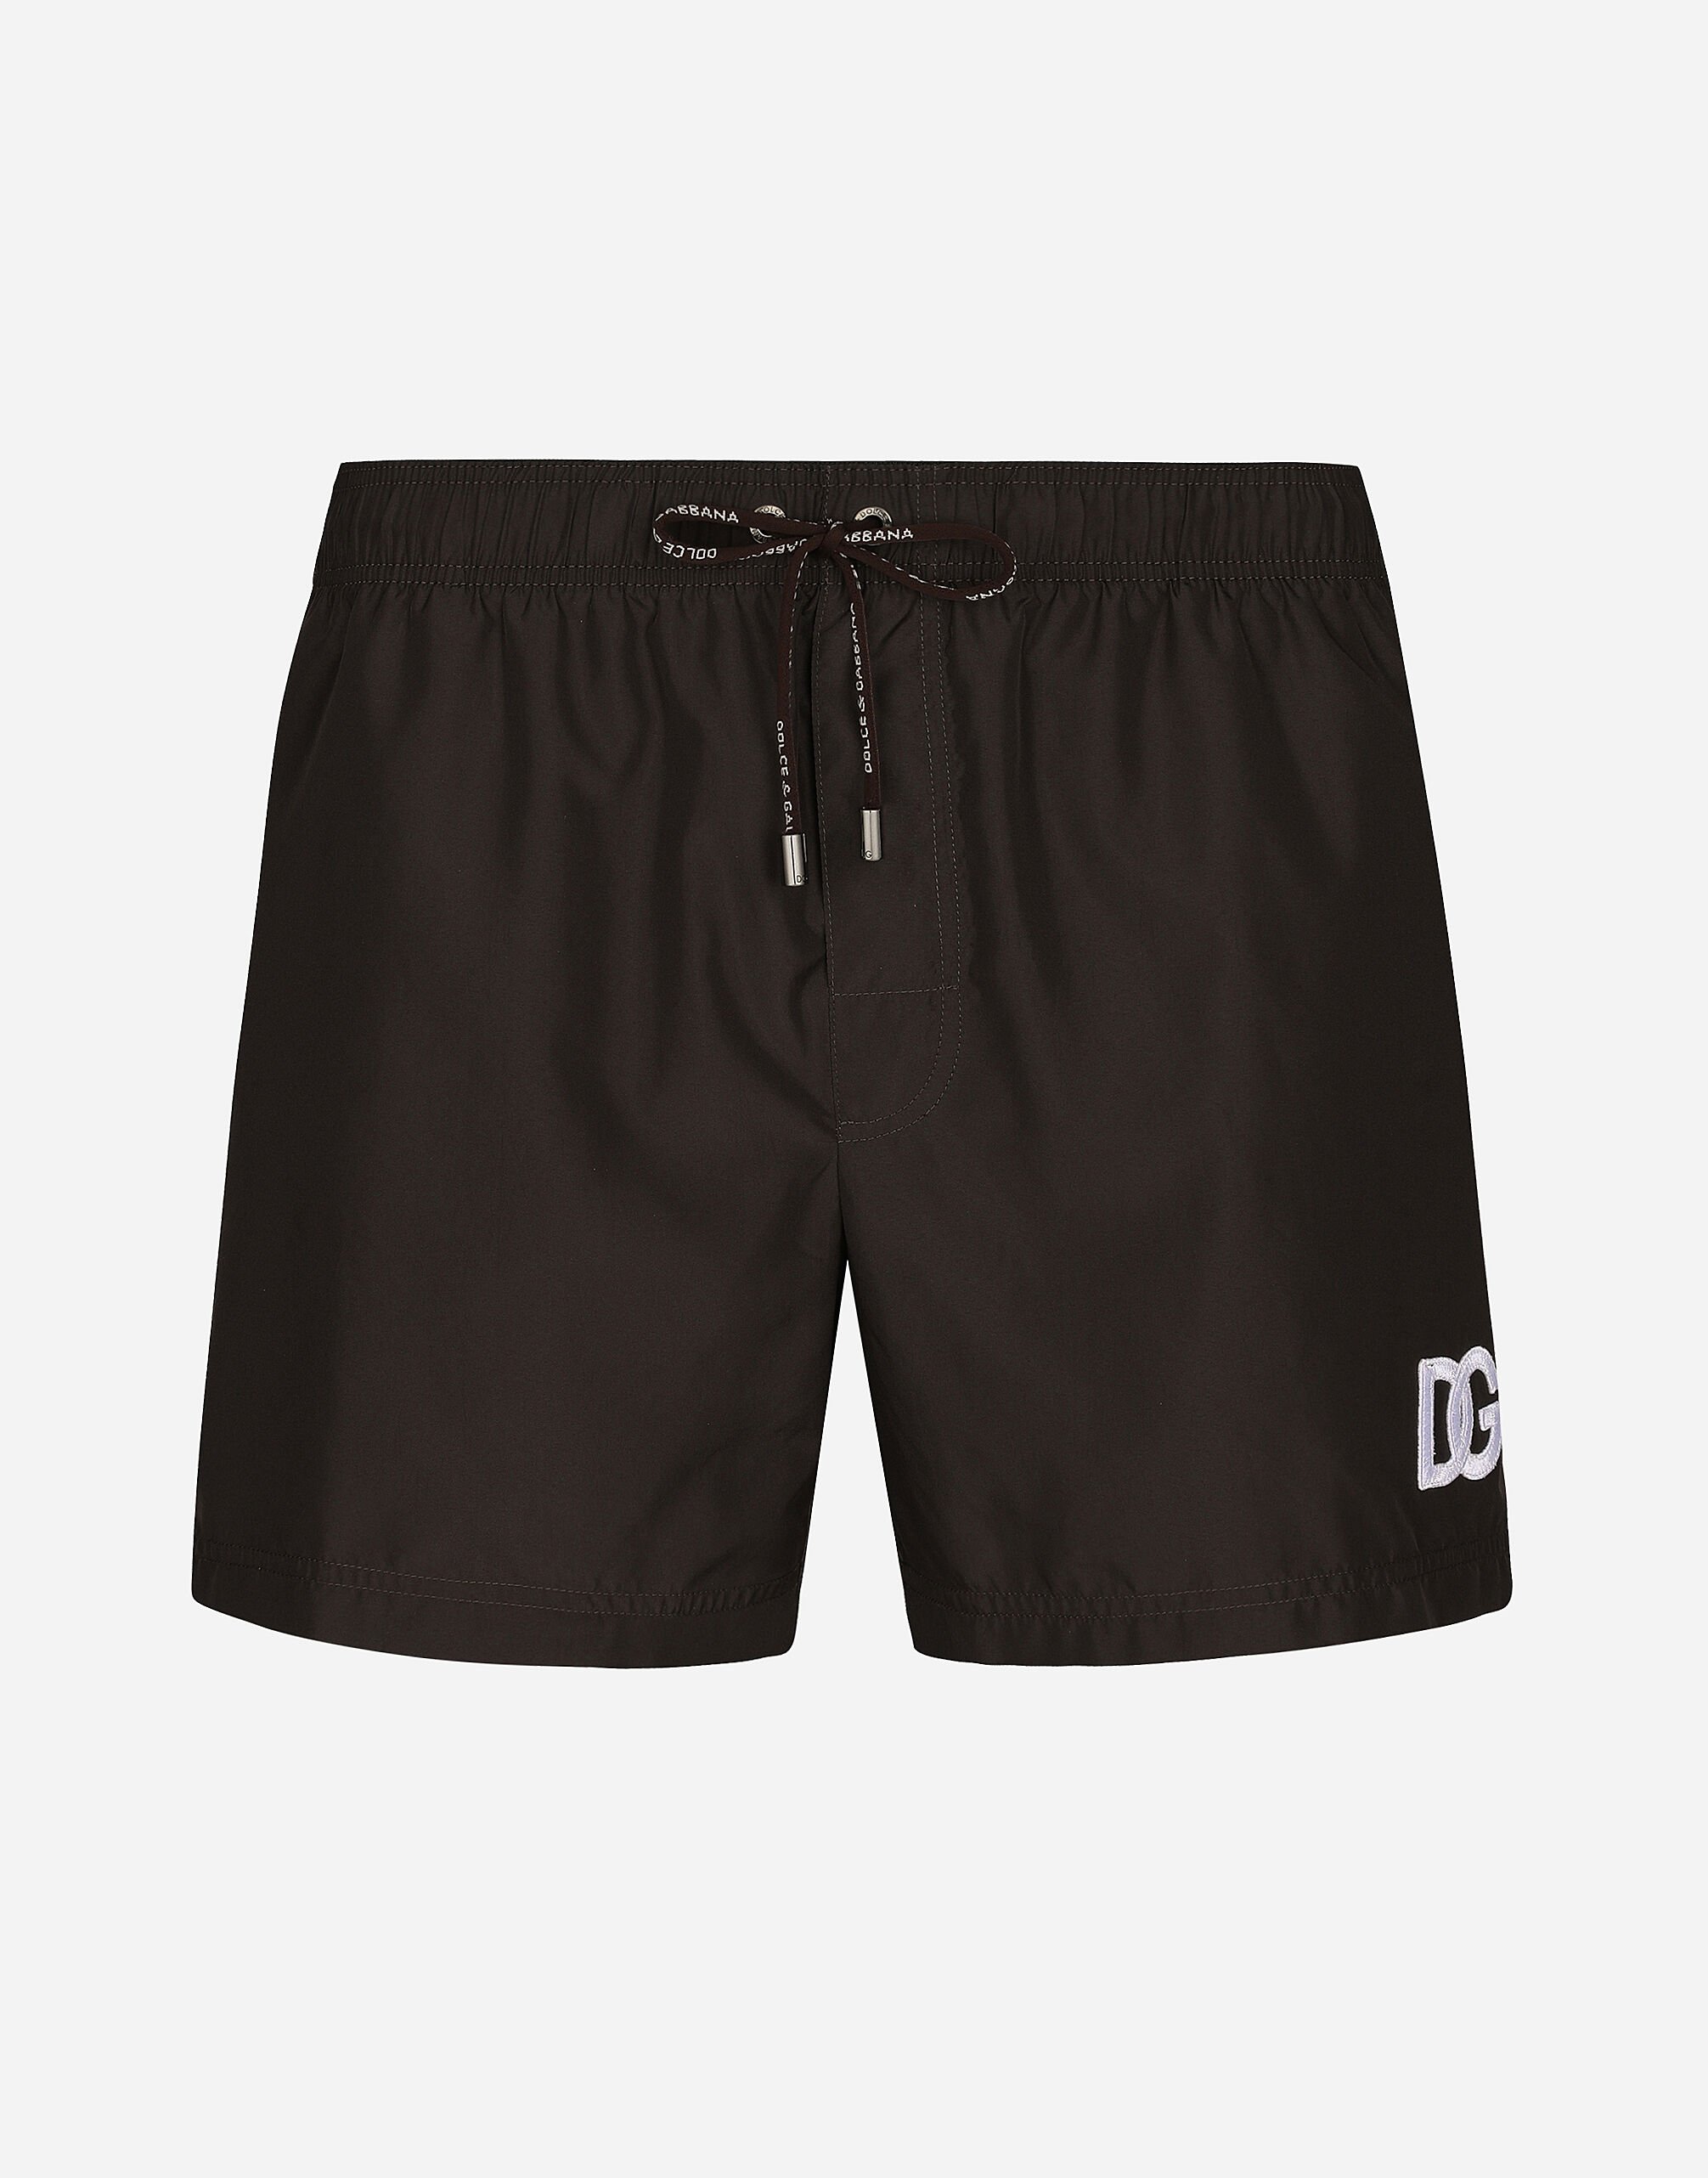 Dolce & Gabbana Short swim trunks with DG logo patch Azure M4A06TFHMU0